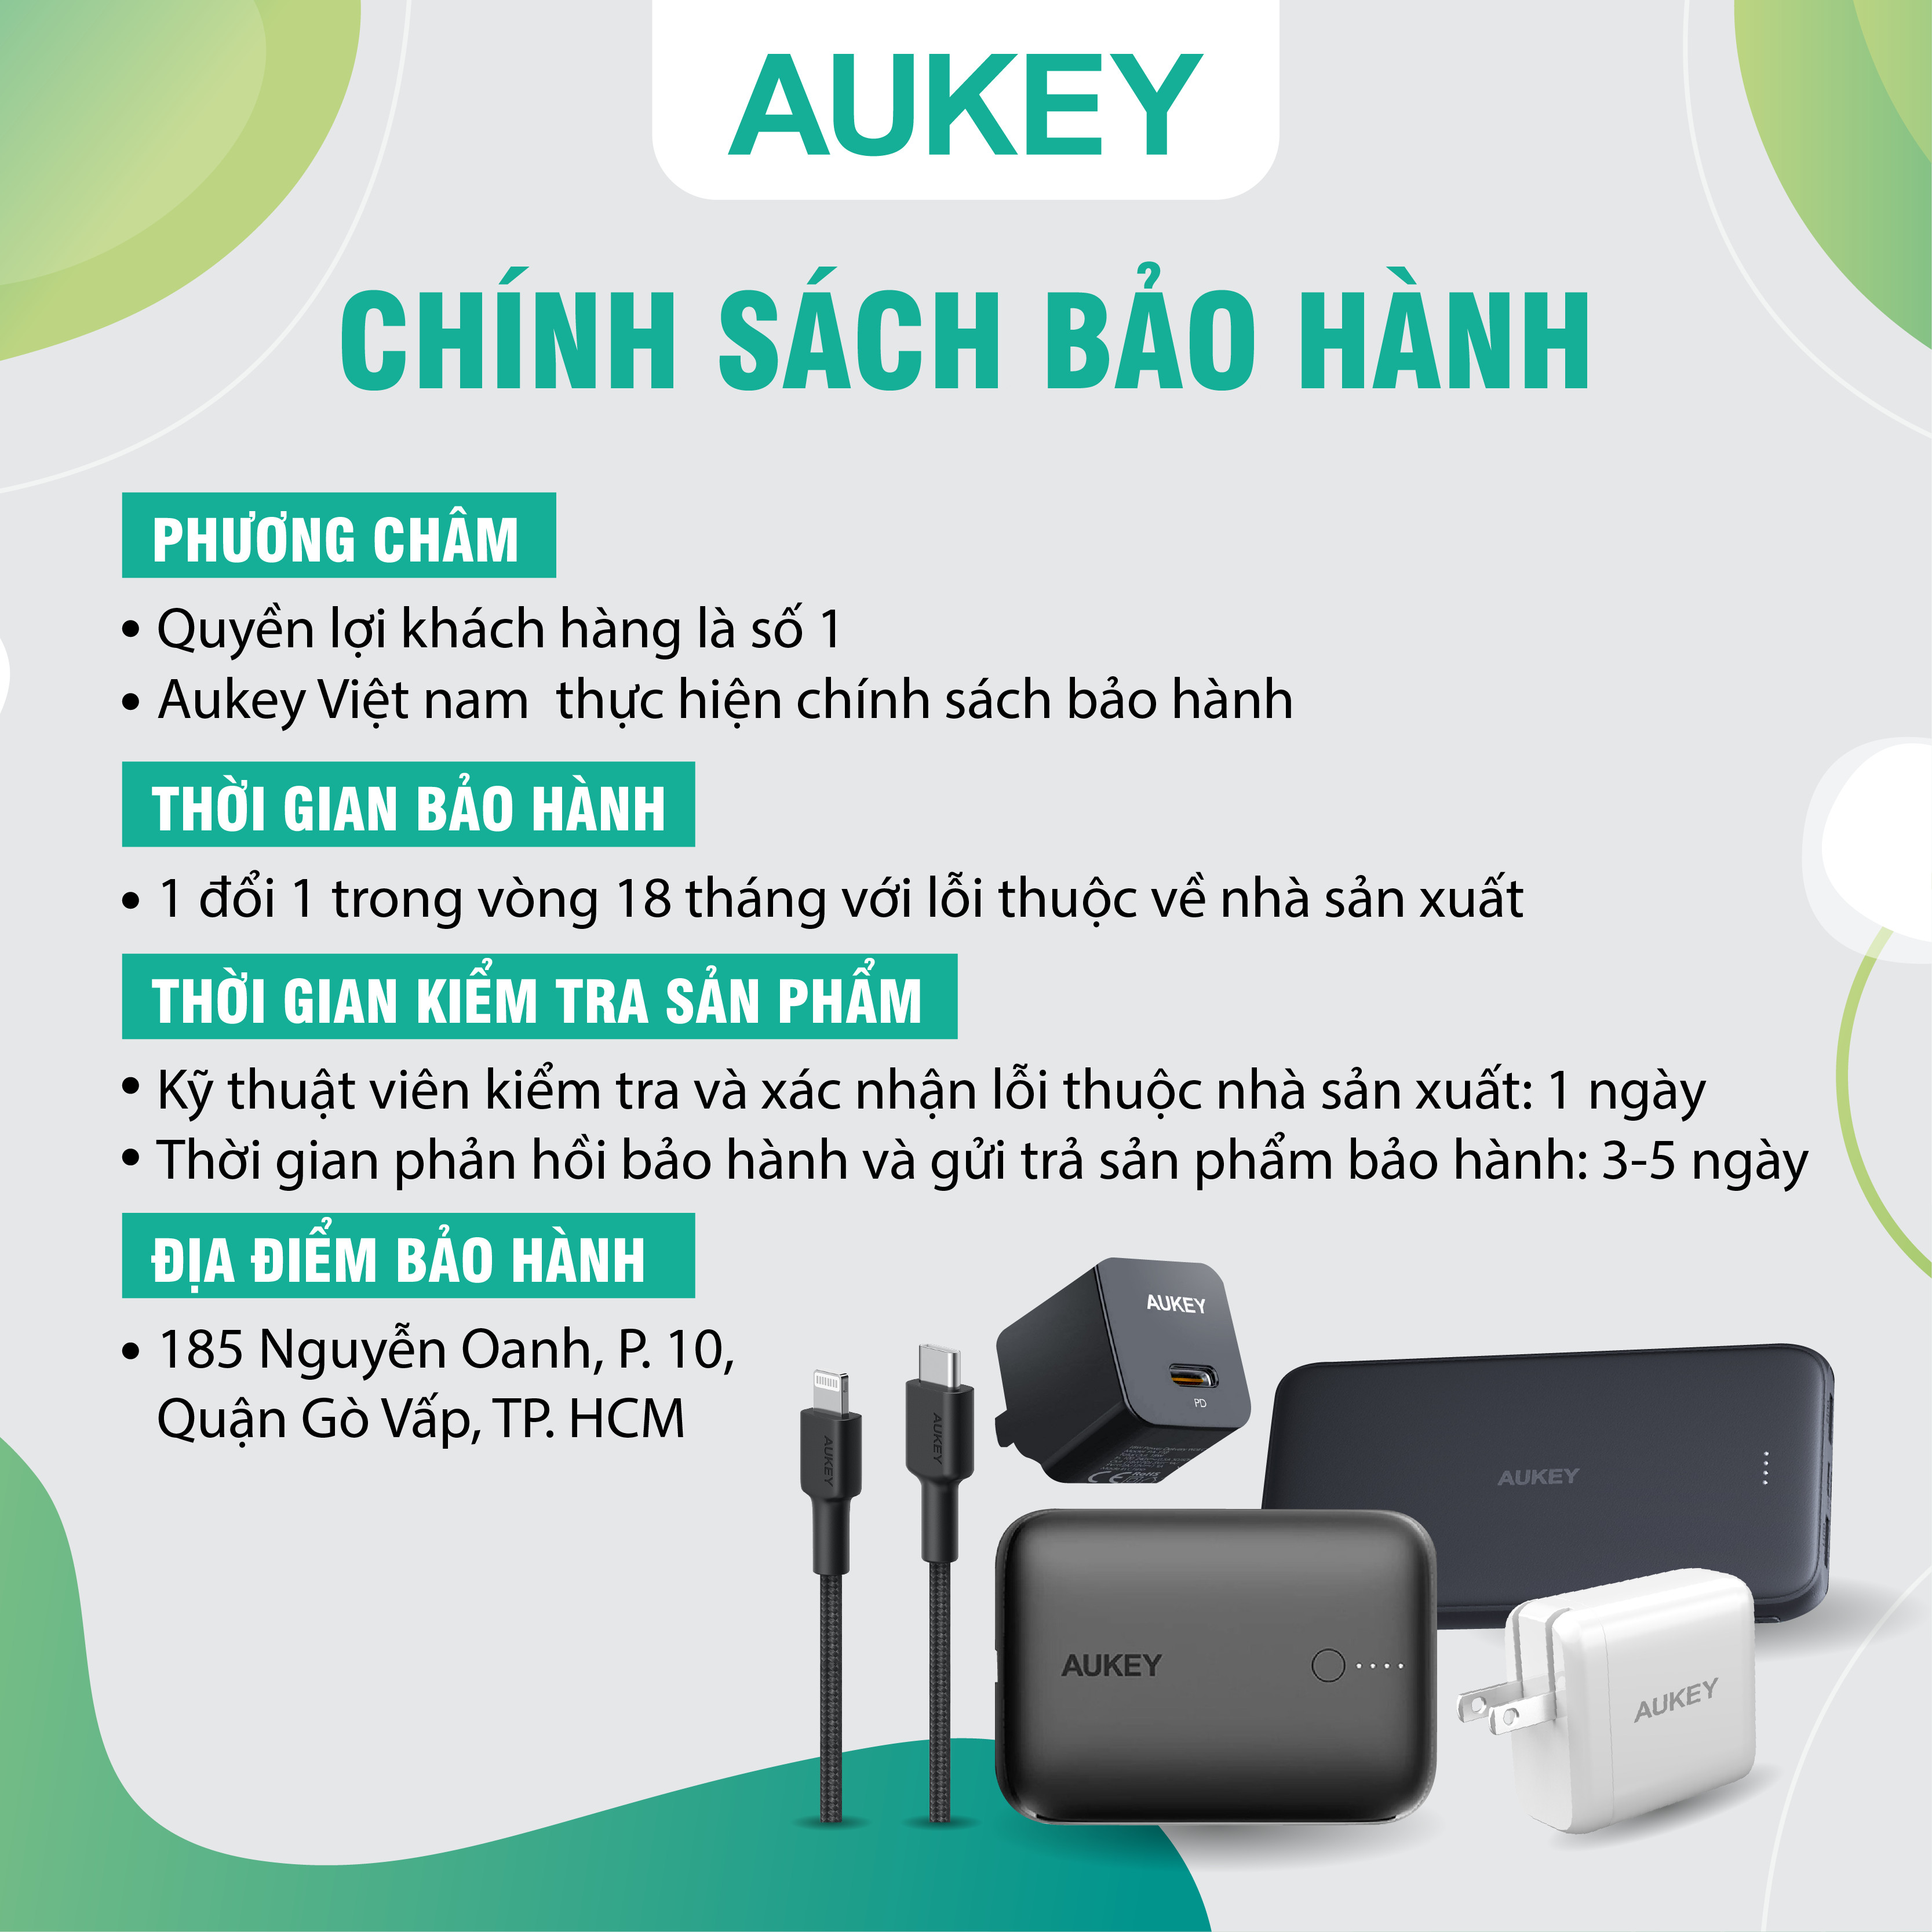 Combo bộ sạc Aukey cho Iphone củ sạc PA-Y30S và cáp sạc CB-CL3 hàng chính hãng